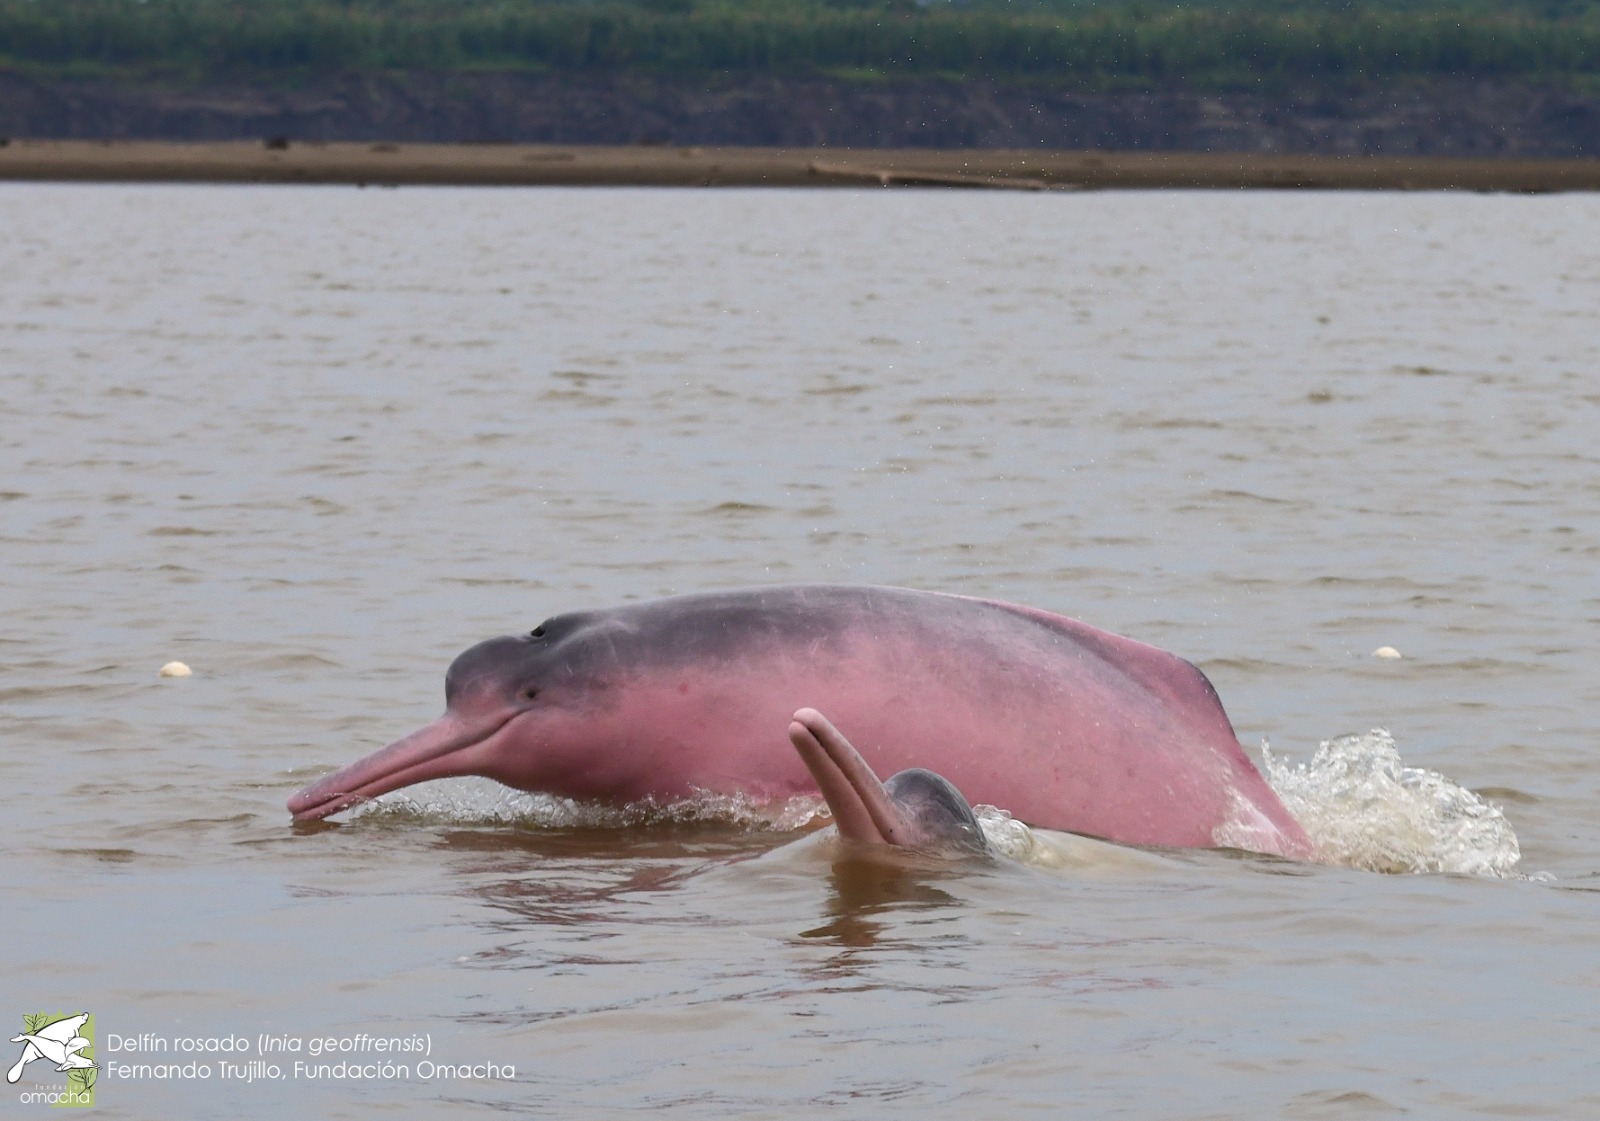 hace unos días más de 150 delfines aparecieron muertos en Brasil.